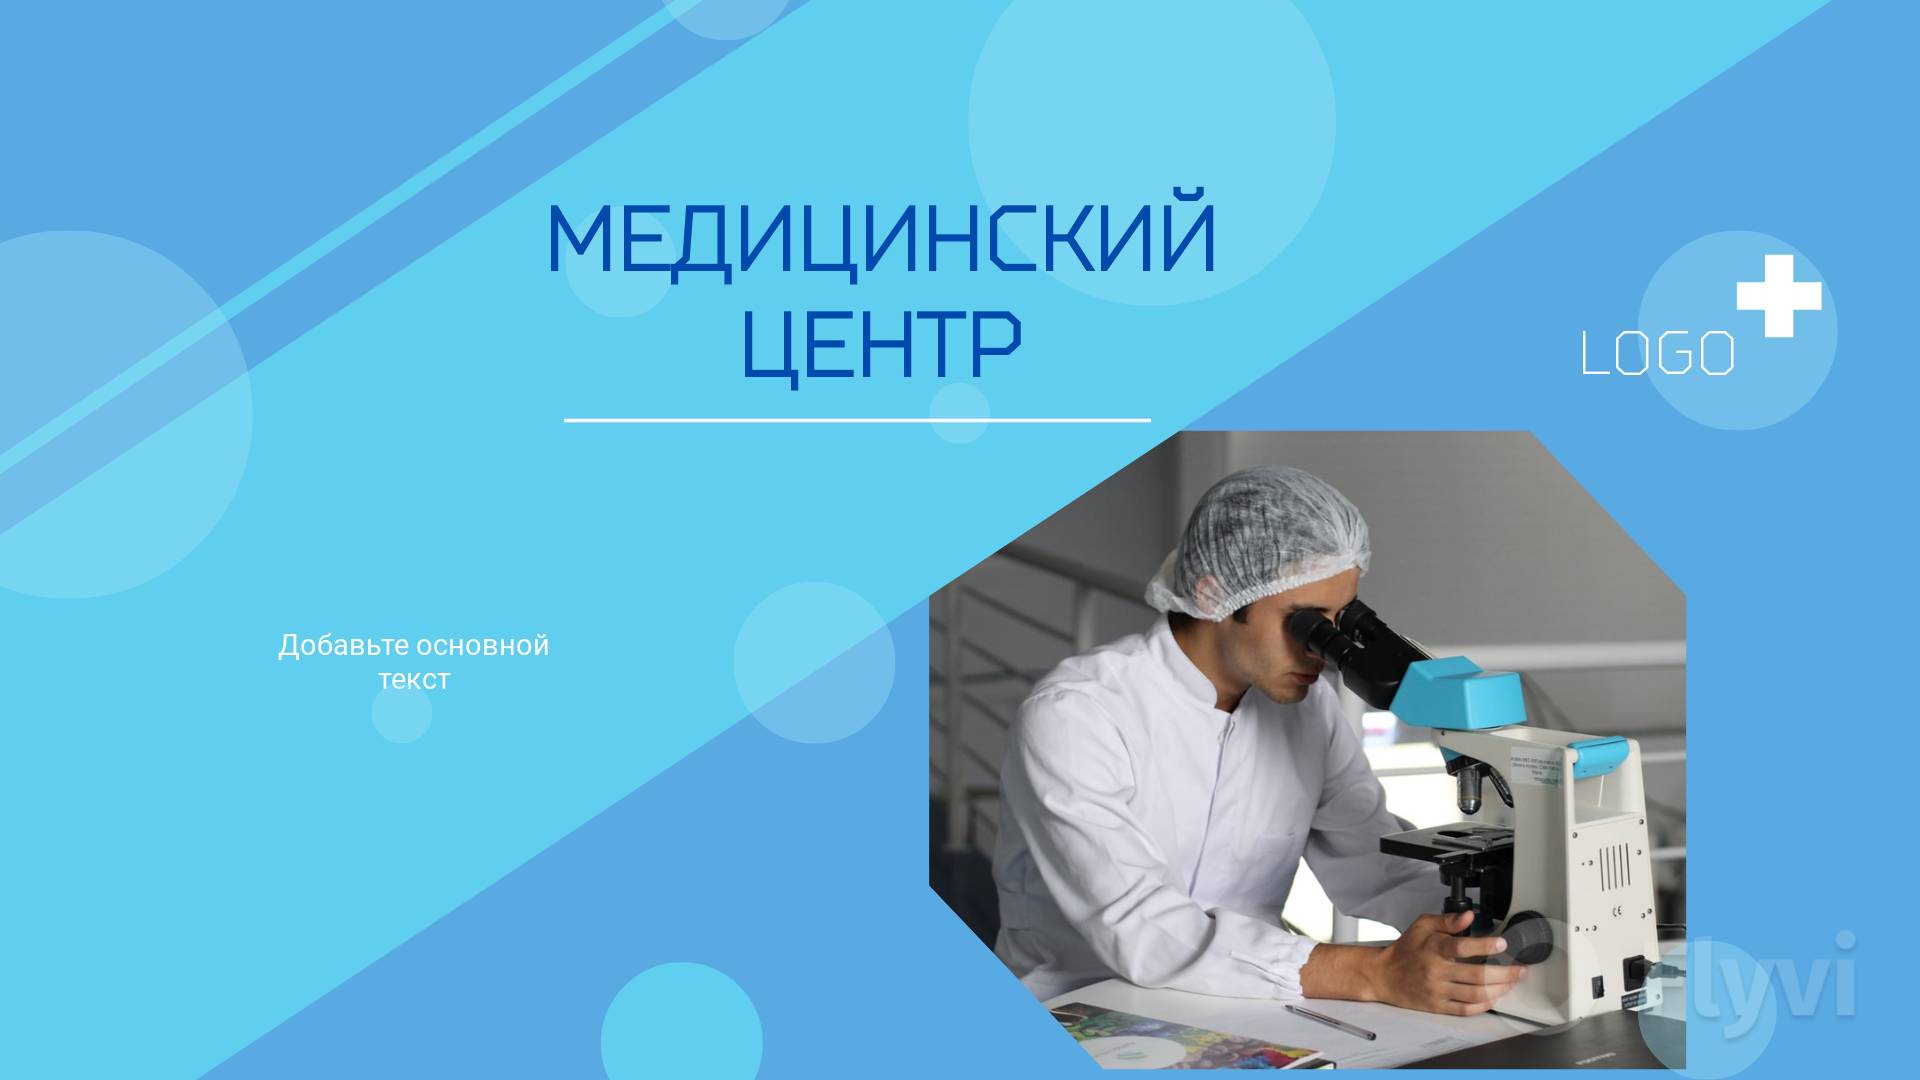 Лаборант в белом халате и шапочке сетке за работой за микроскопом в ярко-бирюзовой публикации для соцсетей мед центра